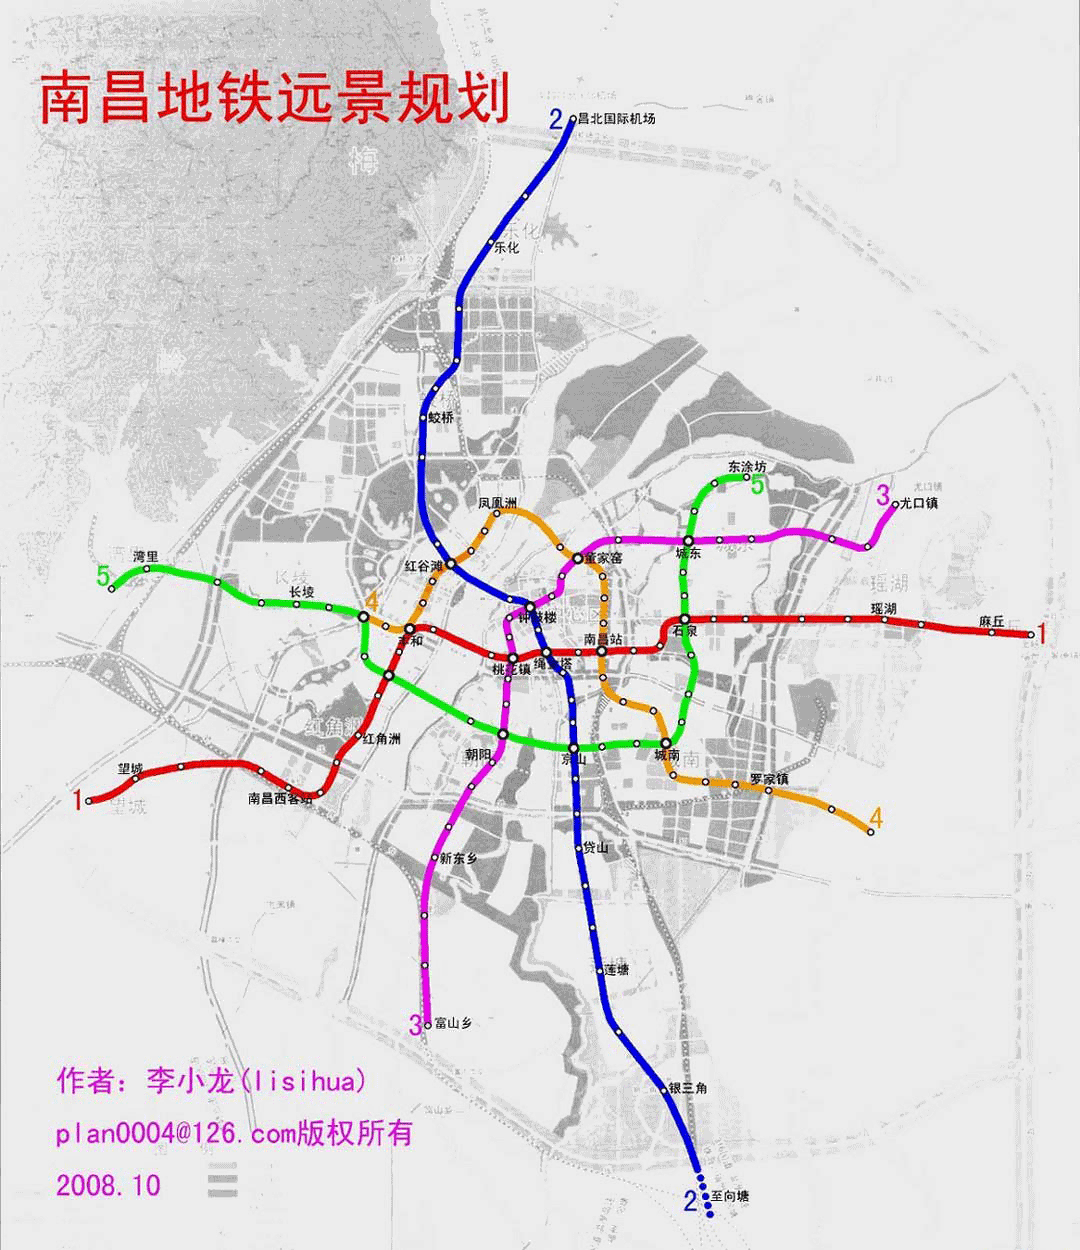 昌景黄高铁南昌枢纽段进入静态验收阶段-中国科技网